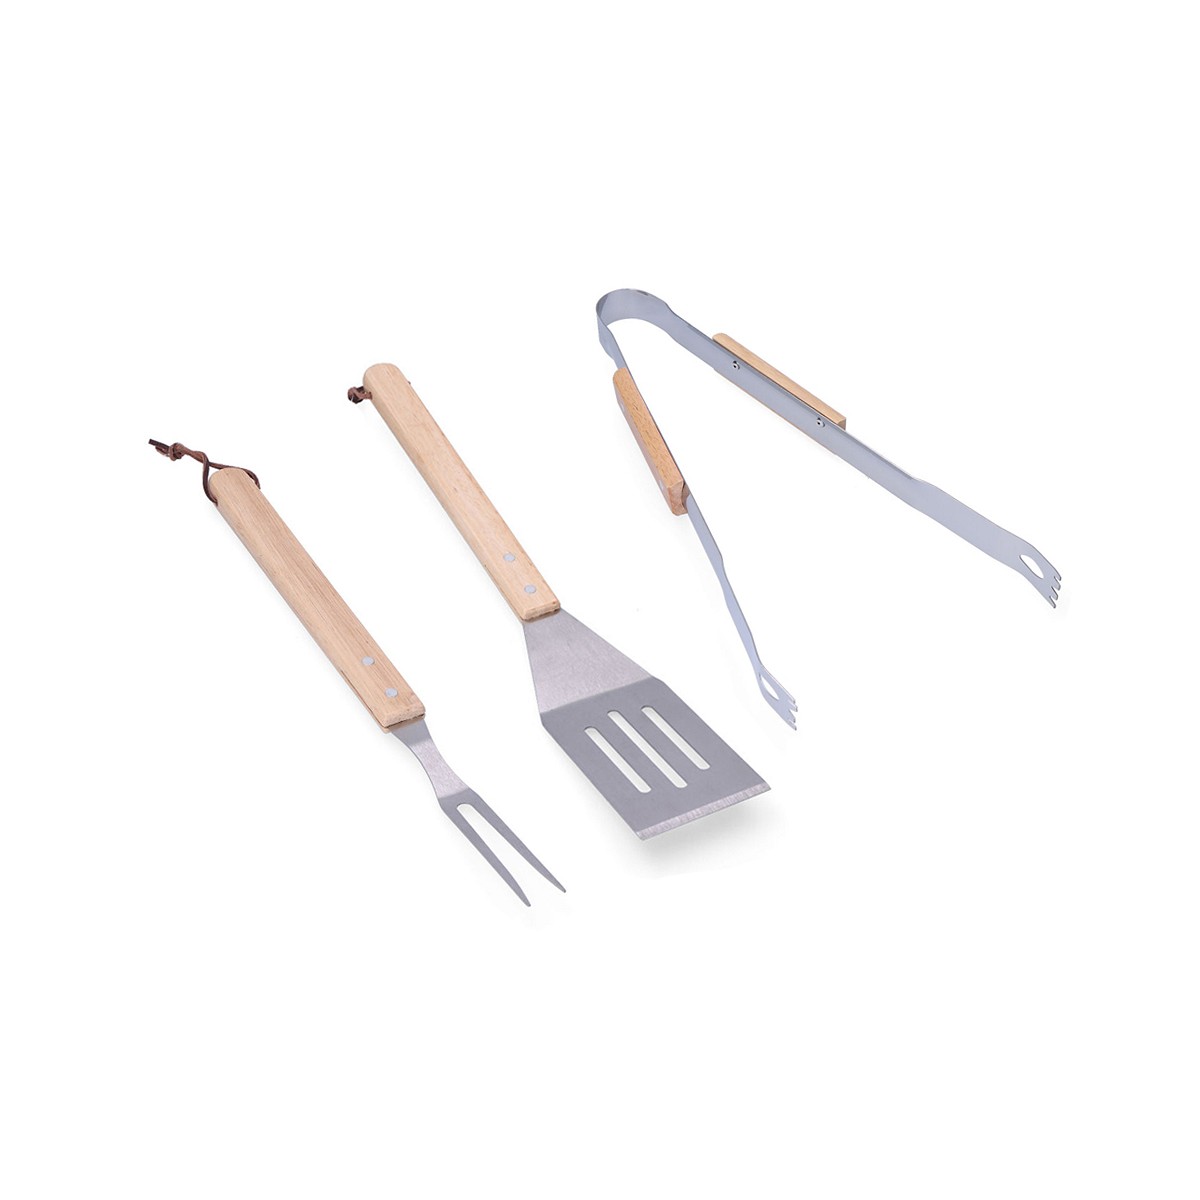 Conjunto de 3 utensilios para barbacoa madera/acero inoxidable edm